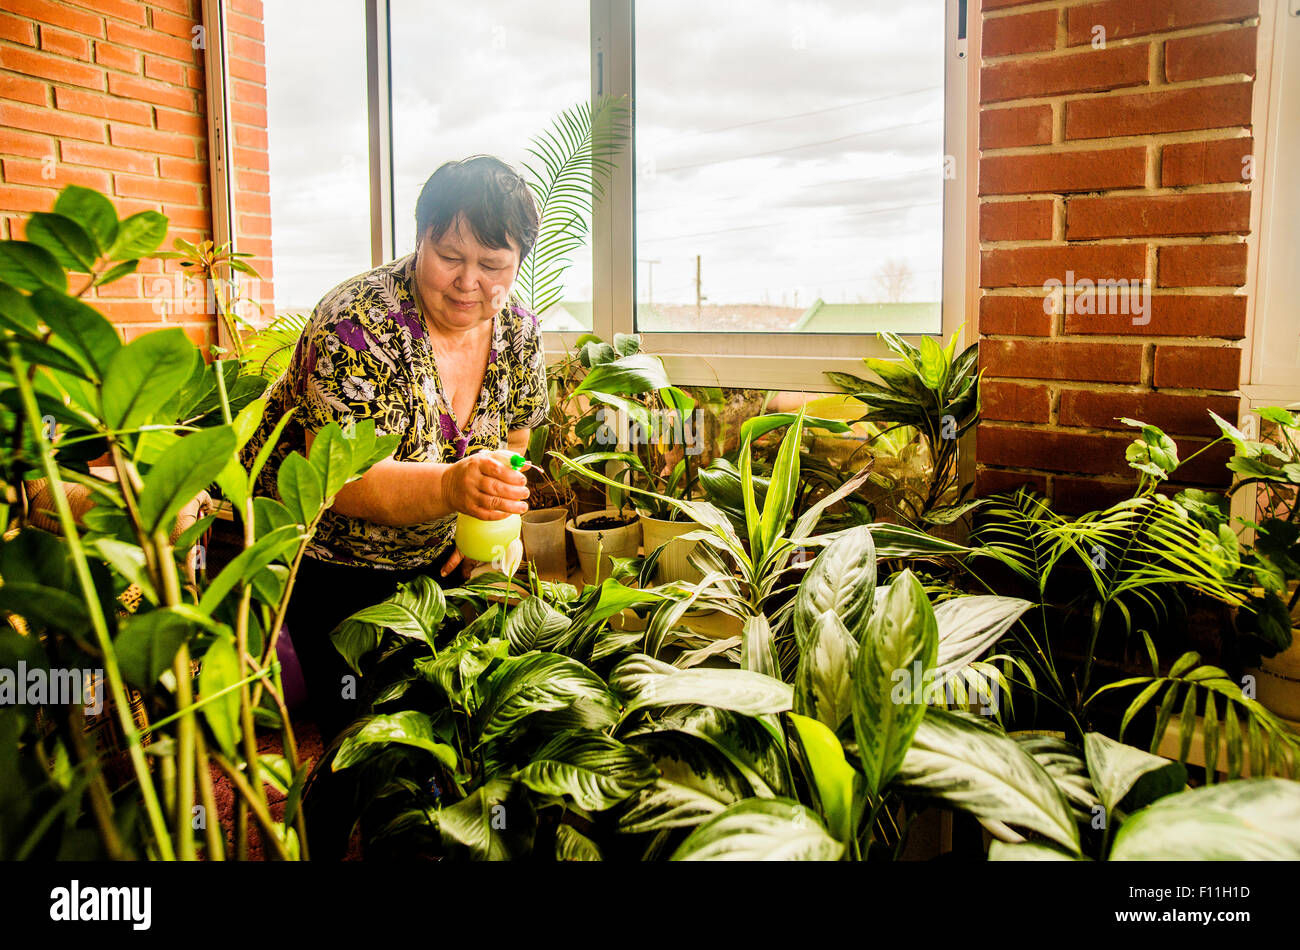 Caucasian woman watering indoor plants Stock Photo